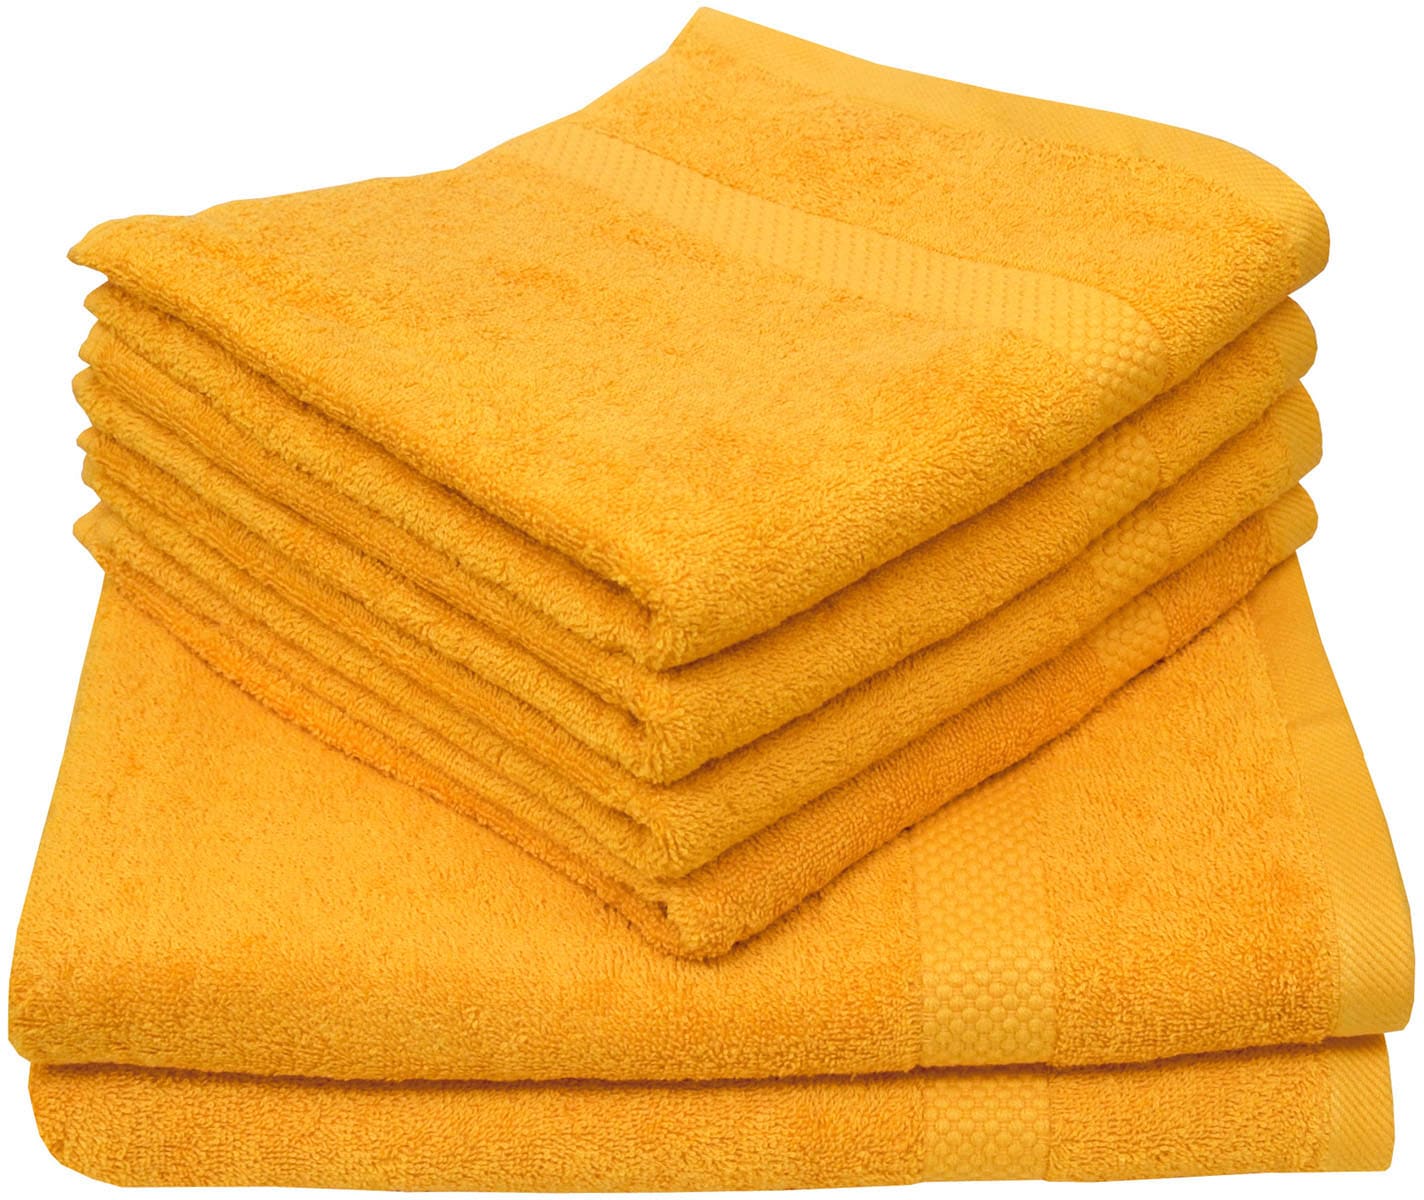 Handtuchsets aus Holz Preisvergleich | Moebel 24